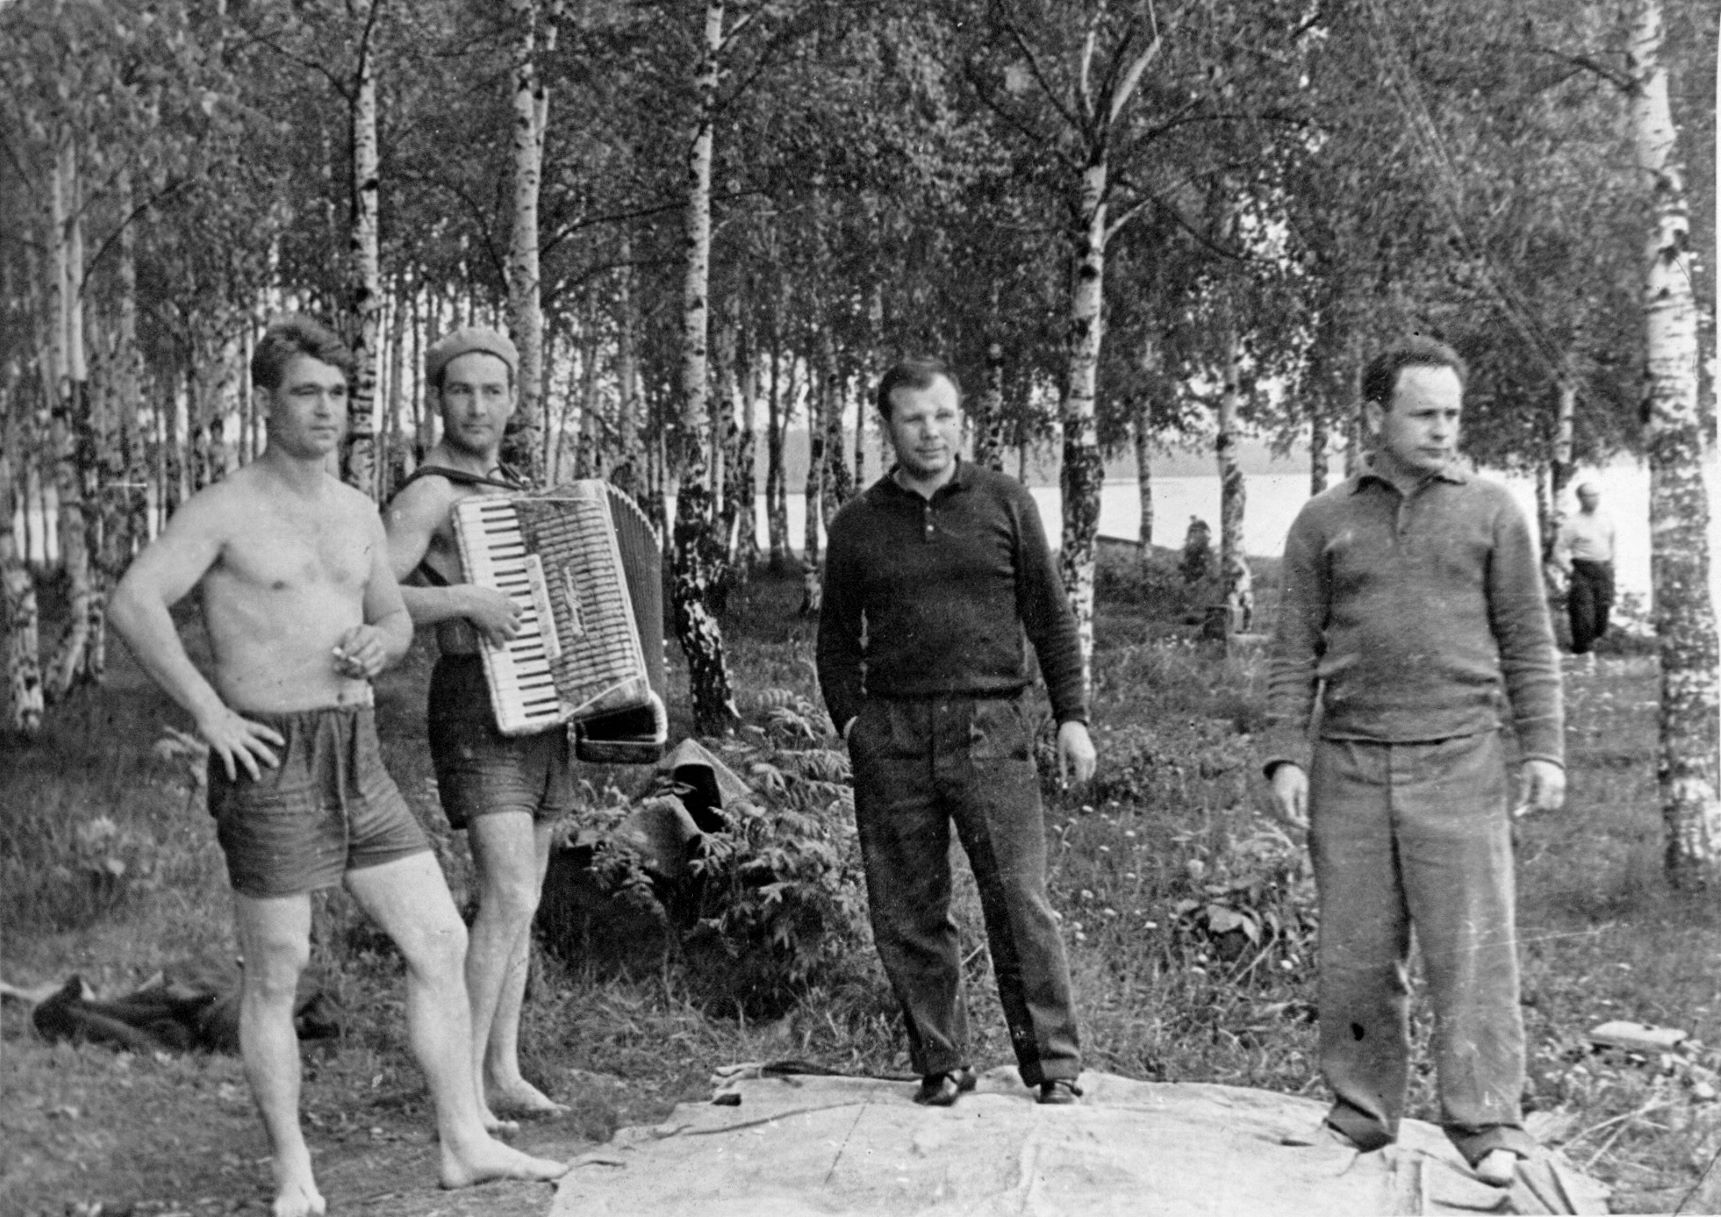 Космонавты: Юрий Гагарин (третий слева на фотографии), Виктор Горбатко на пикнике в Долгопрудном с друзьями, 19 августа 1963 года